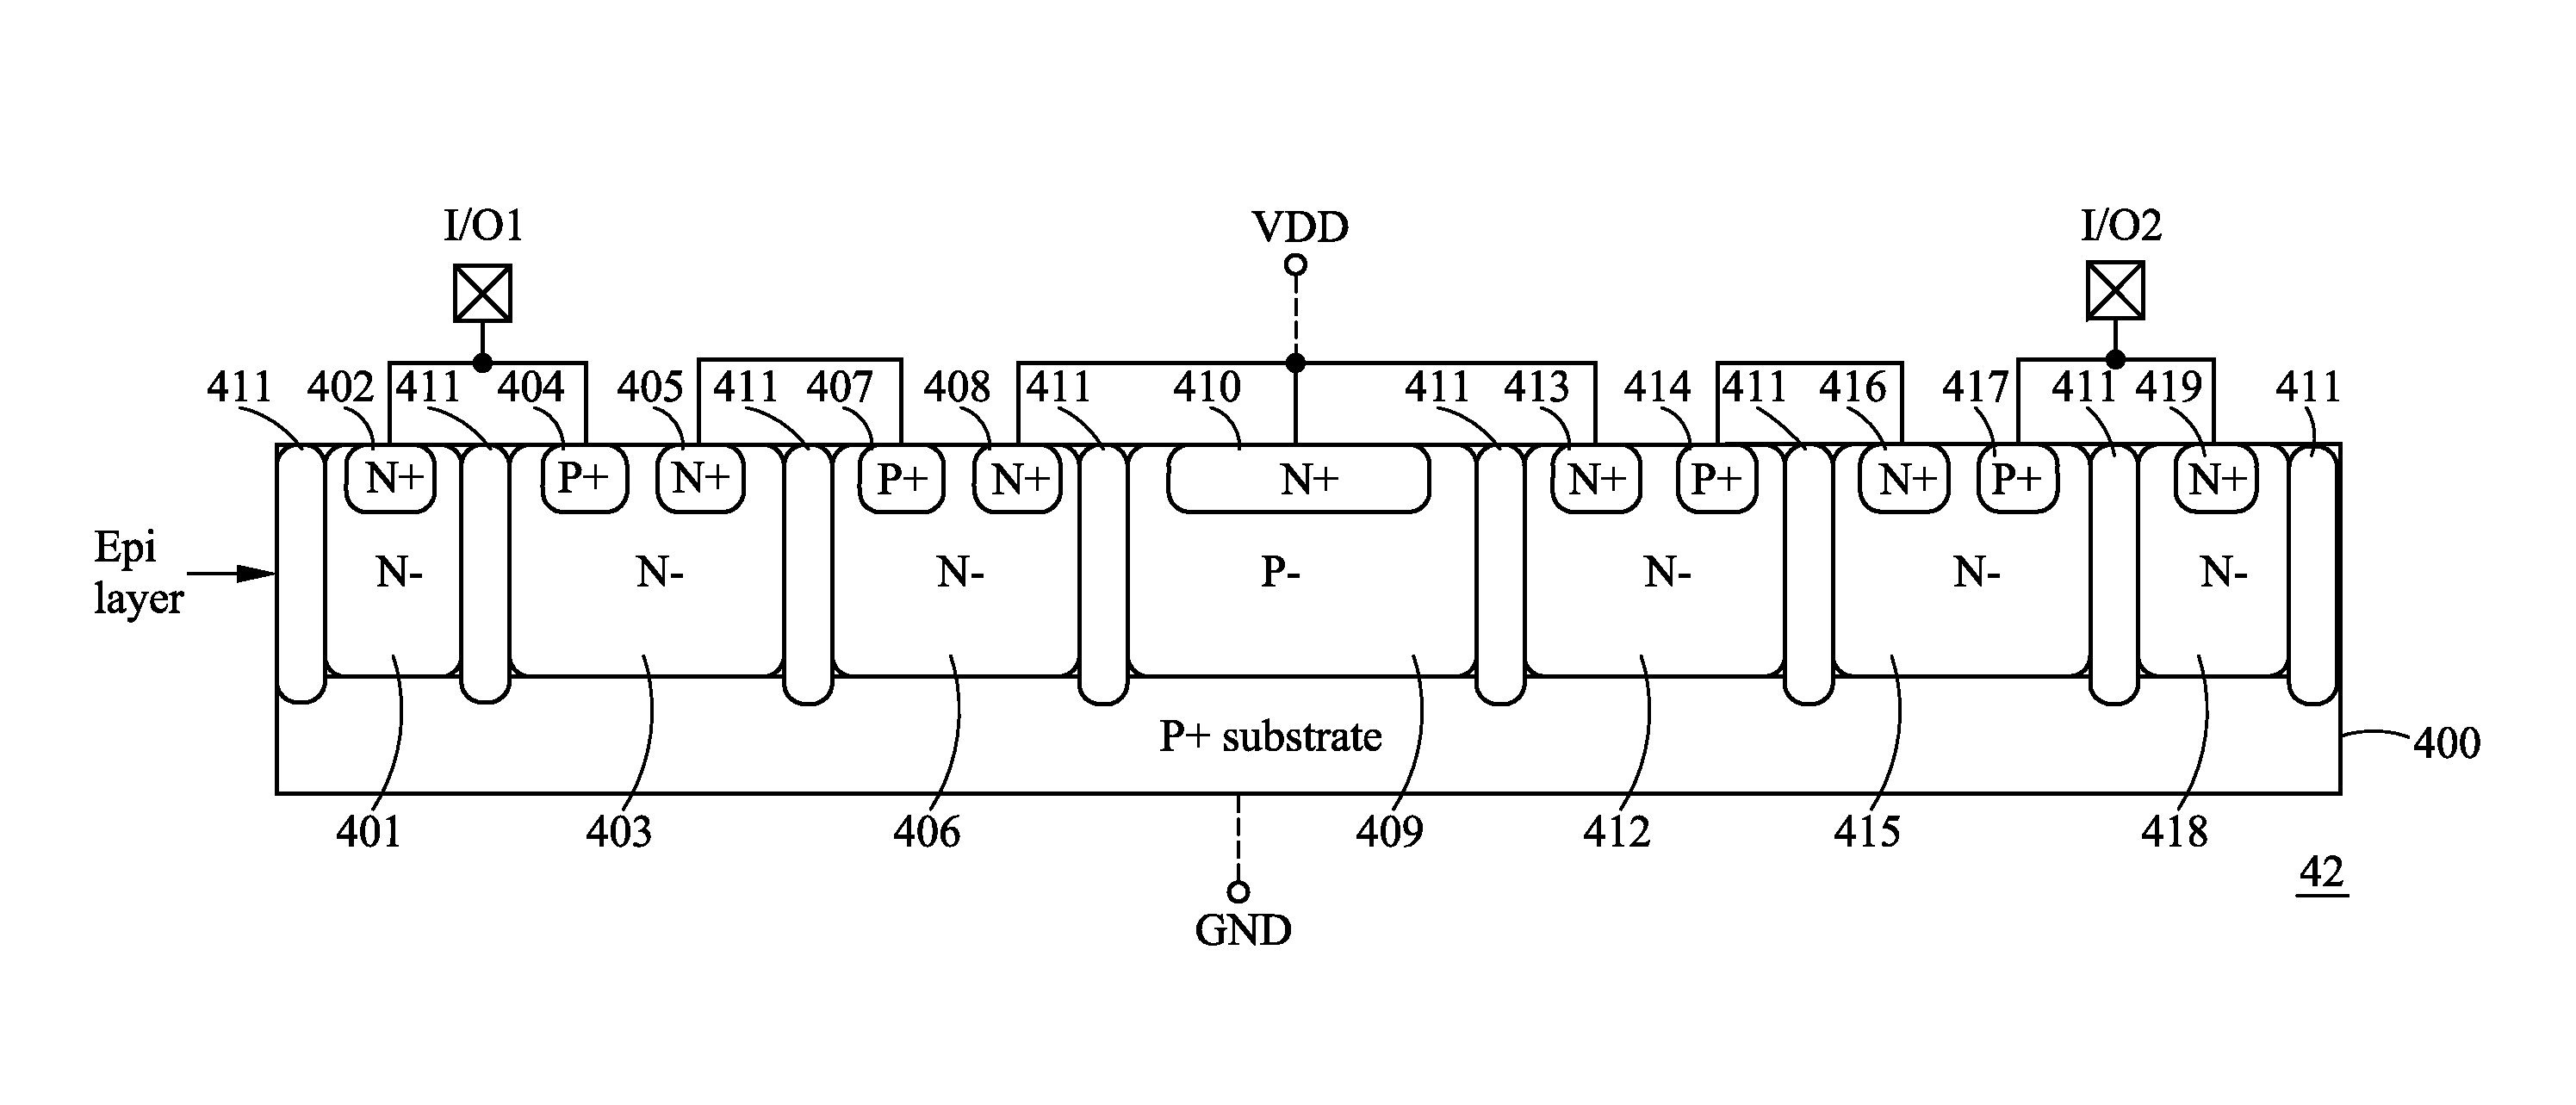 Transient voltage suppressors